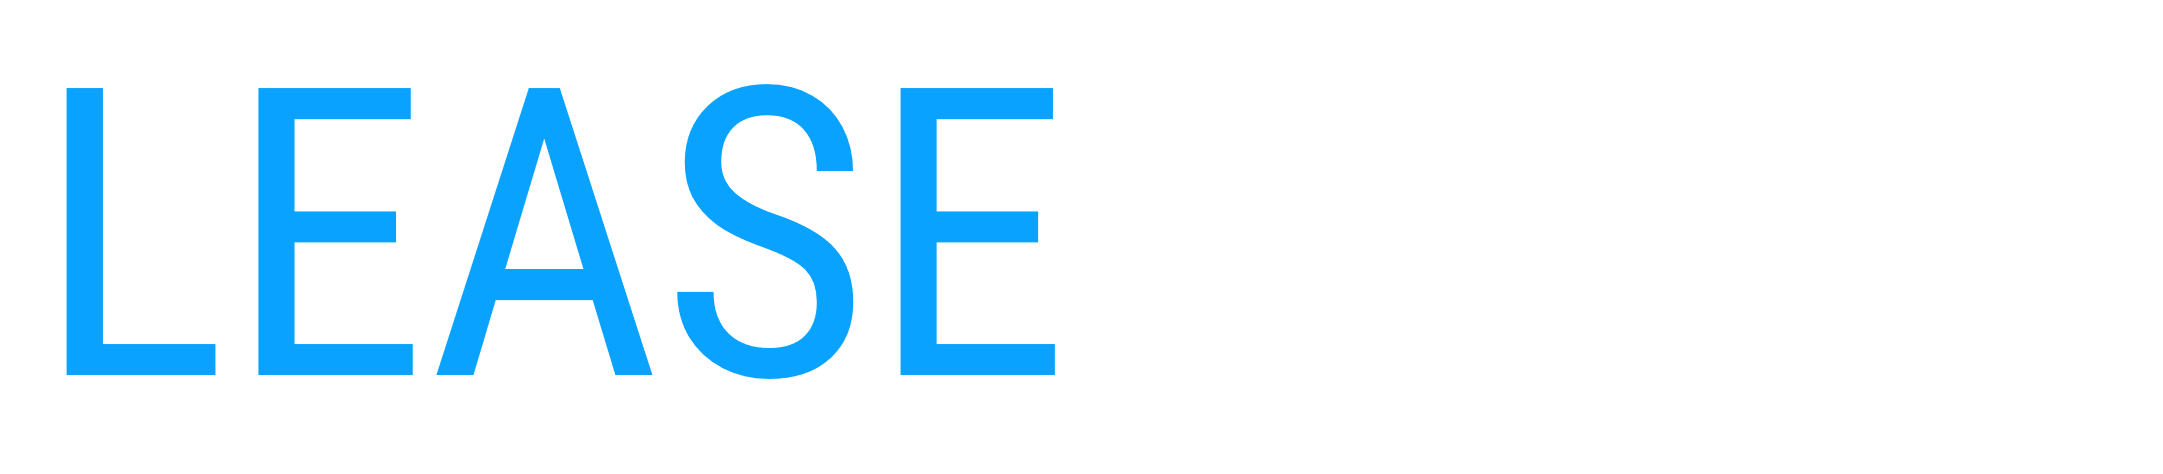 lease-logo-white